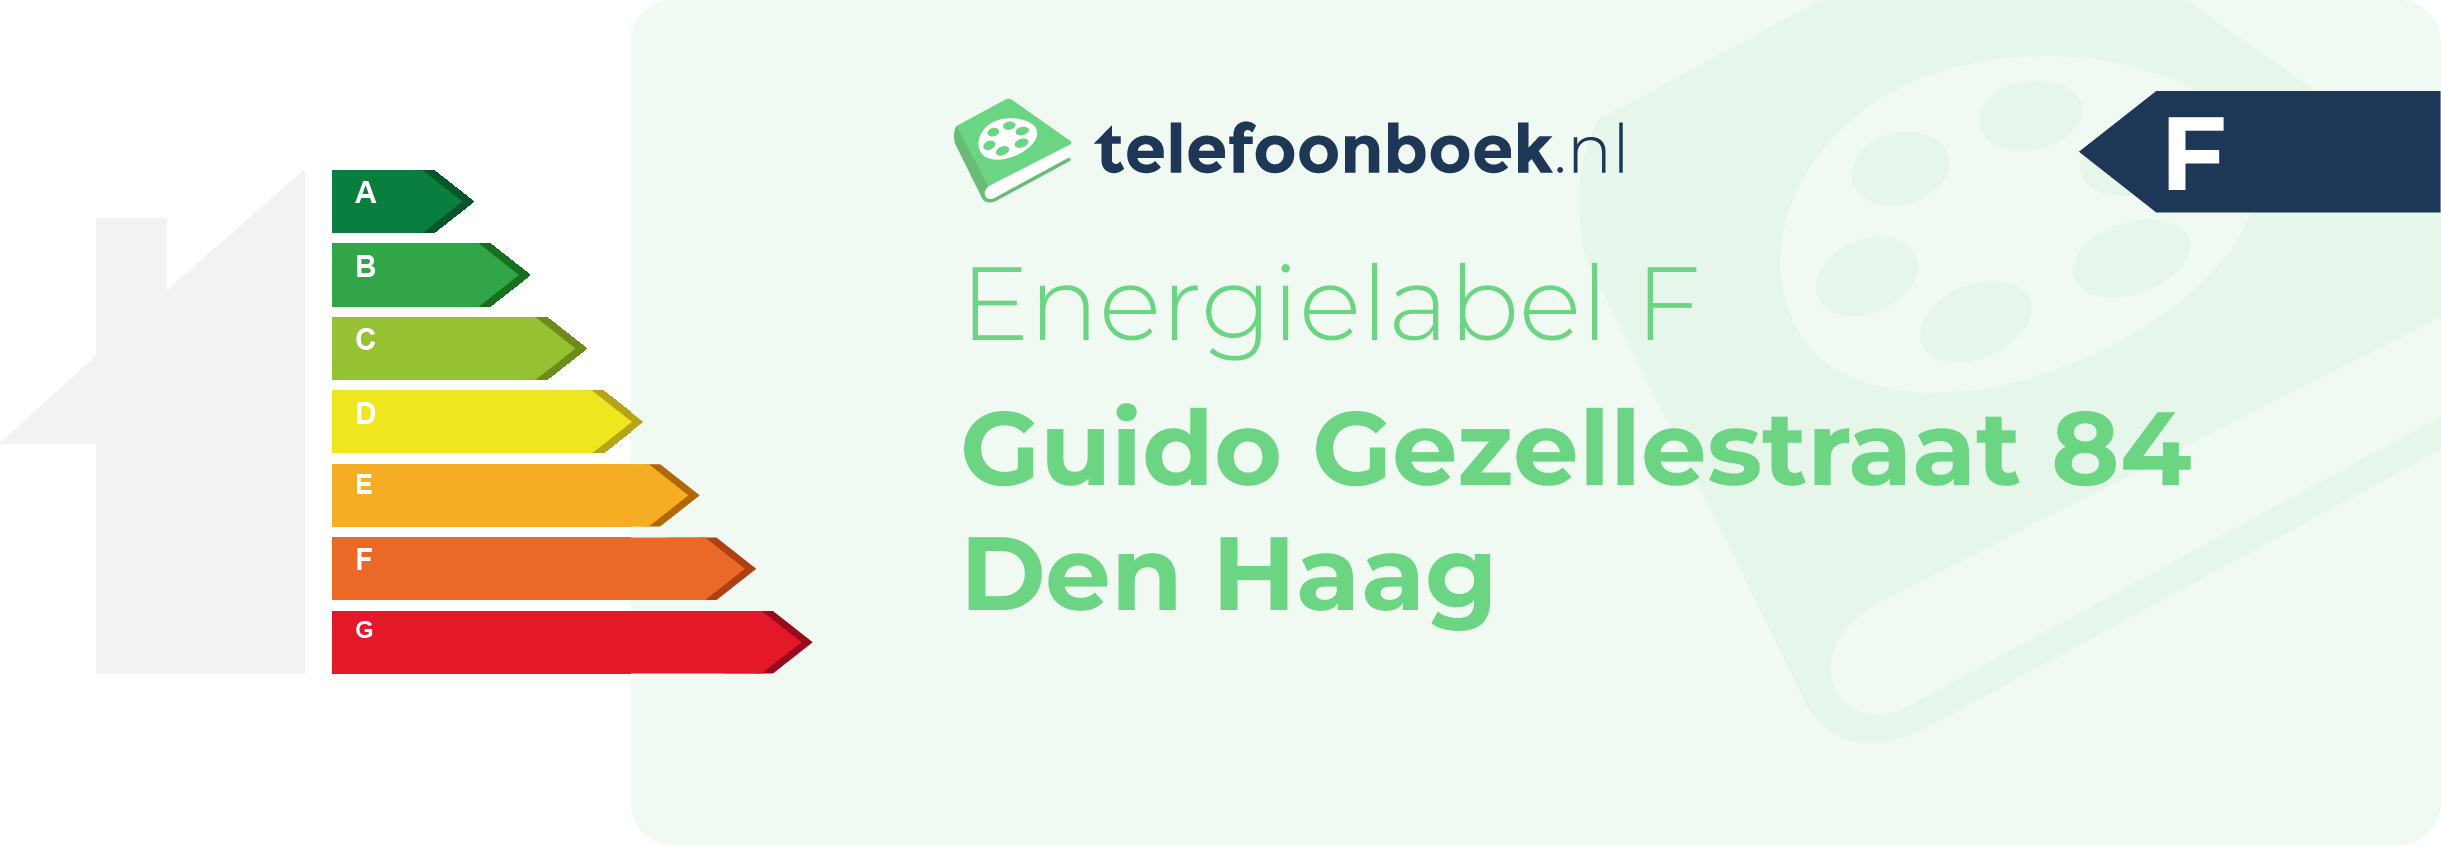 Energielabel Guido Gezellestraat 84 Den Haag